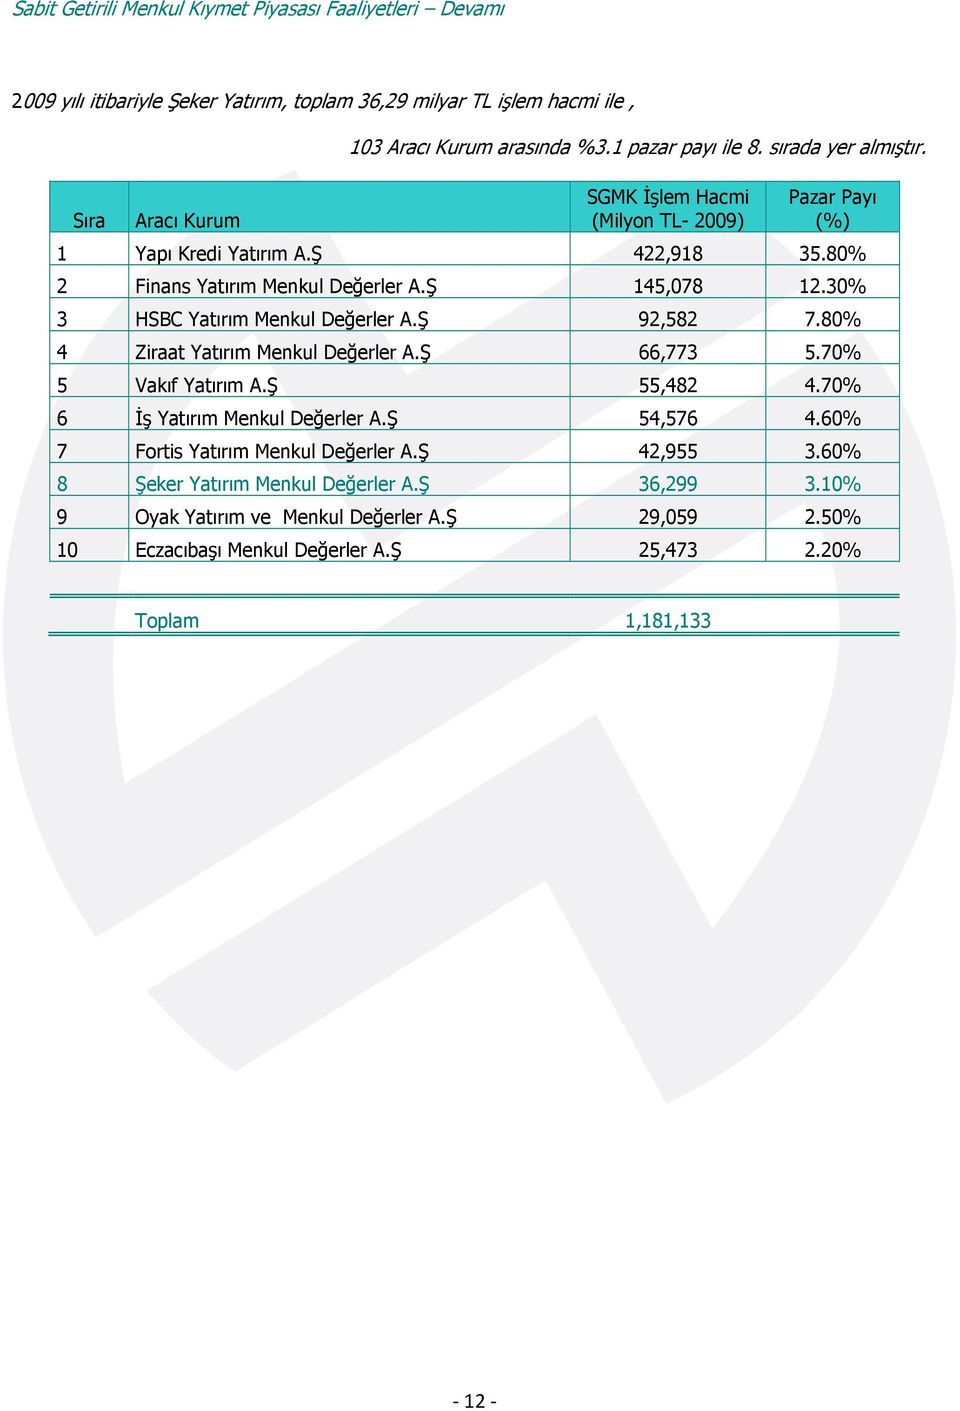 30% 3 HSBC Yatırım Menkul Değerler A.Ş 92,582 7.80% 4 Ziraat Yatırım Menkul Değerler A.Ş 66,773 5.70% 5 Vakıf Yatırım A.Ş 55,482 4.70% 6 İş Yatırım Menkul Değerler A.Ş 54,576 4.